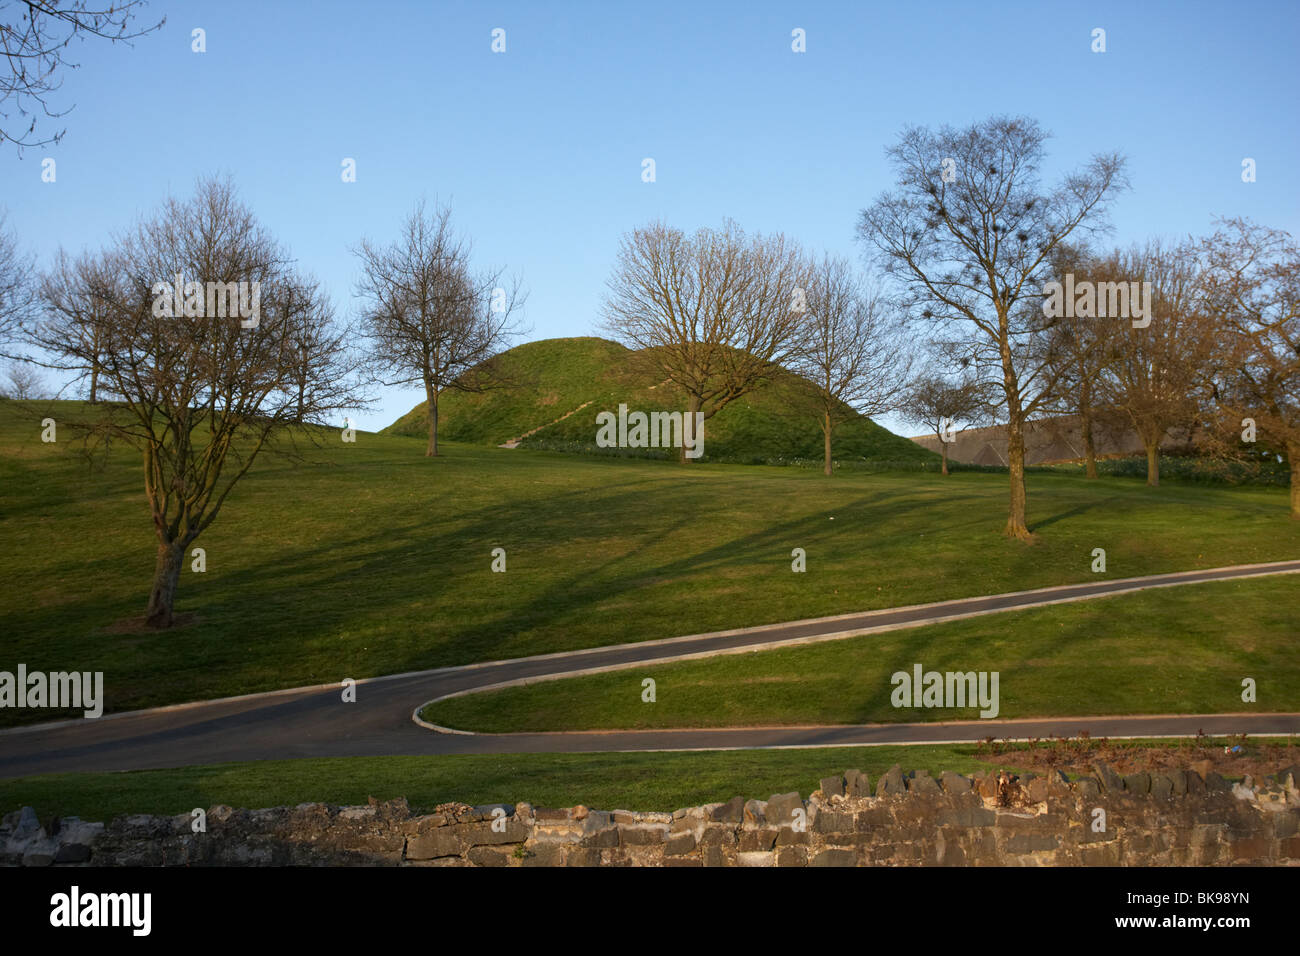 Dundonald Graben oder Motte Mann aus künstlichen Hügel für eine Festung Grafschaft unten Nordirland Vereinigtes Königreich Stockfoto